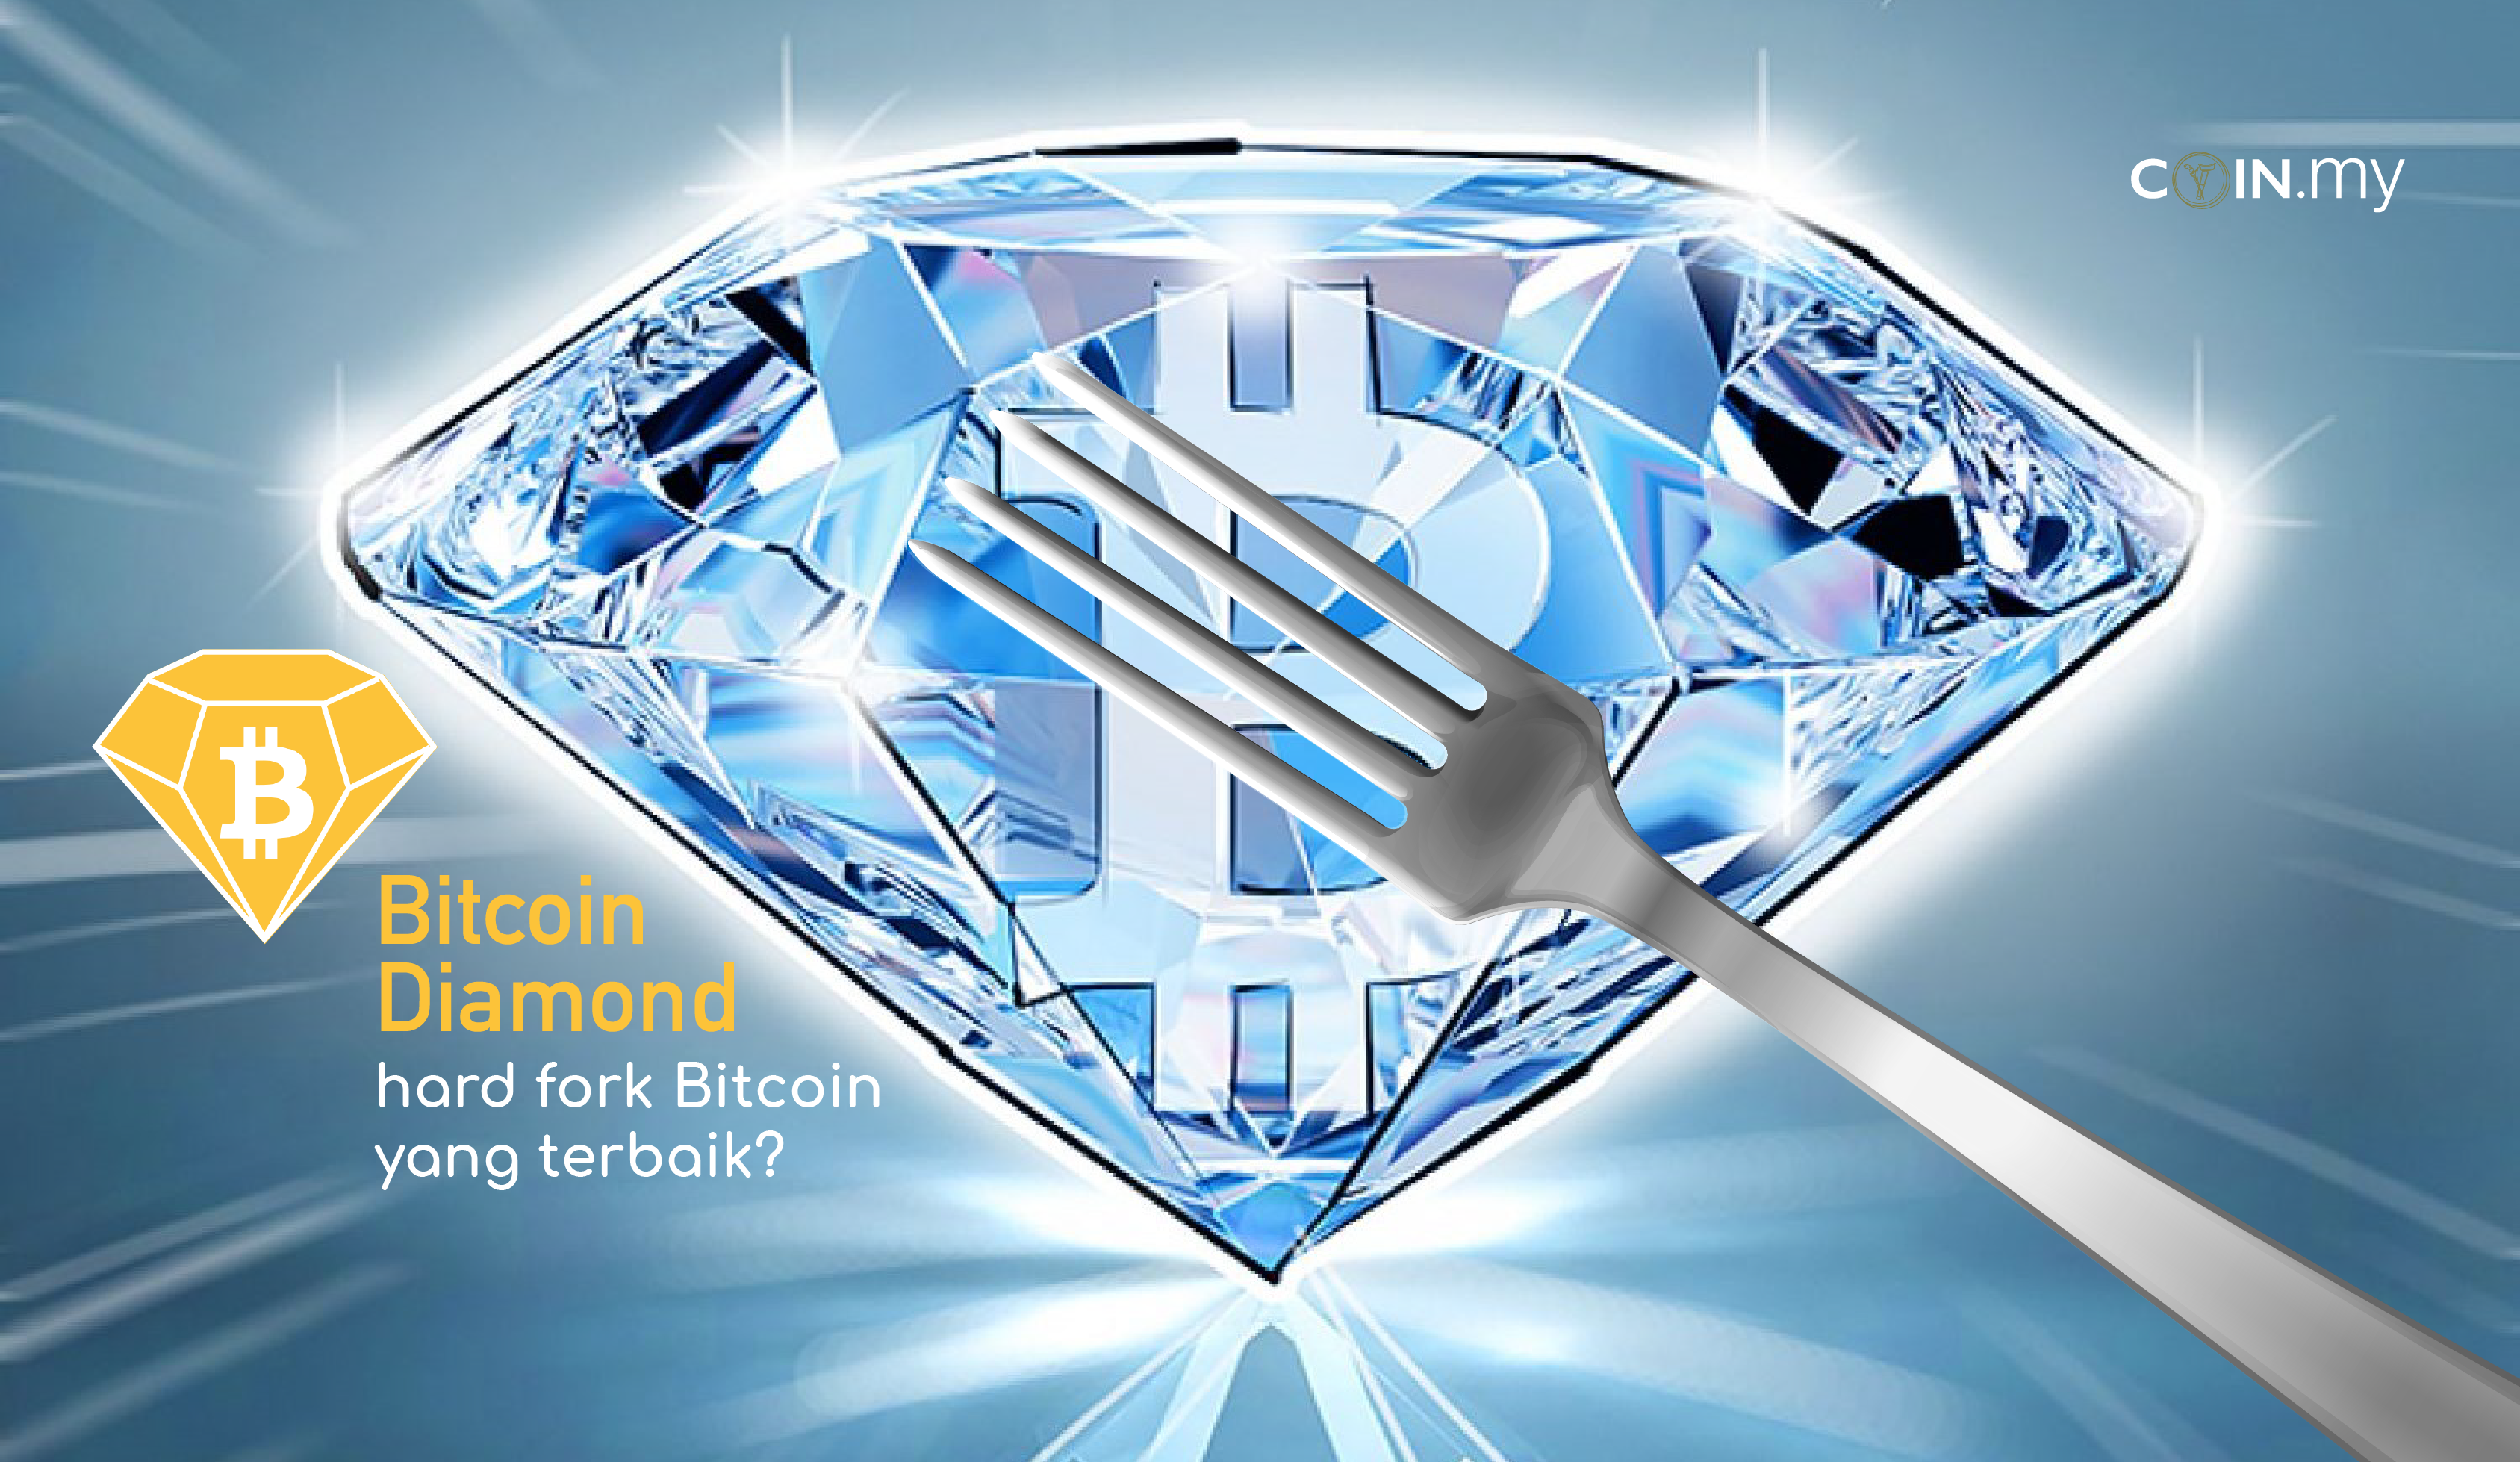 Bitcoin Diamond Hard Fork Bitcoin Yang Terbaik Coin My - 